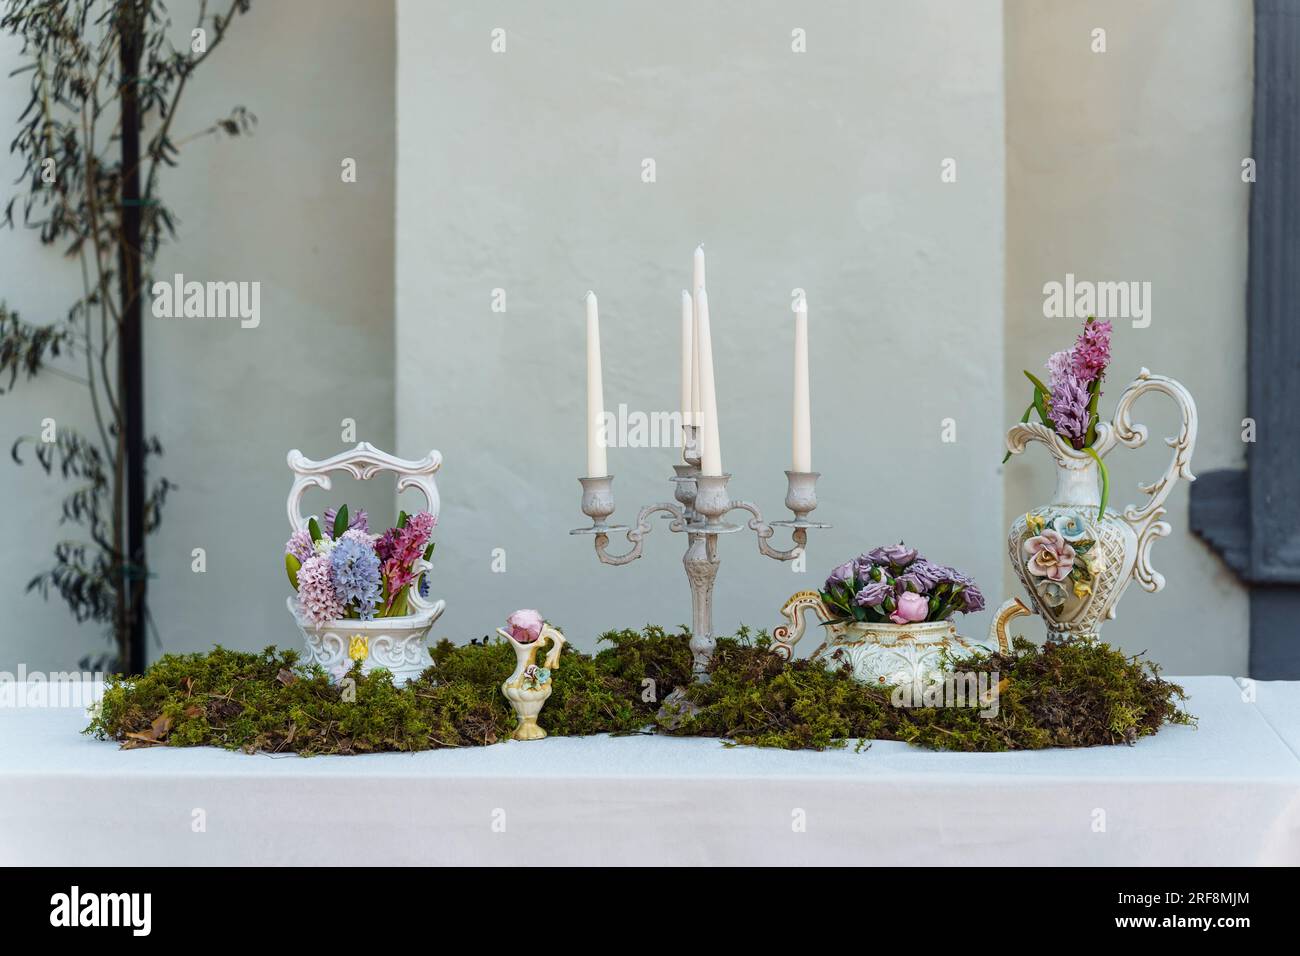 Dekorative Dekoration des Festtischs. Kerzenhalter mit Kerzen, Vasen mit Hyazinthen und anderen Blumen, grünes Moos auf einem Tisch, der mit einem bedeckt ist Stockfoto